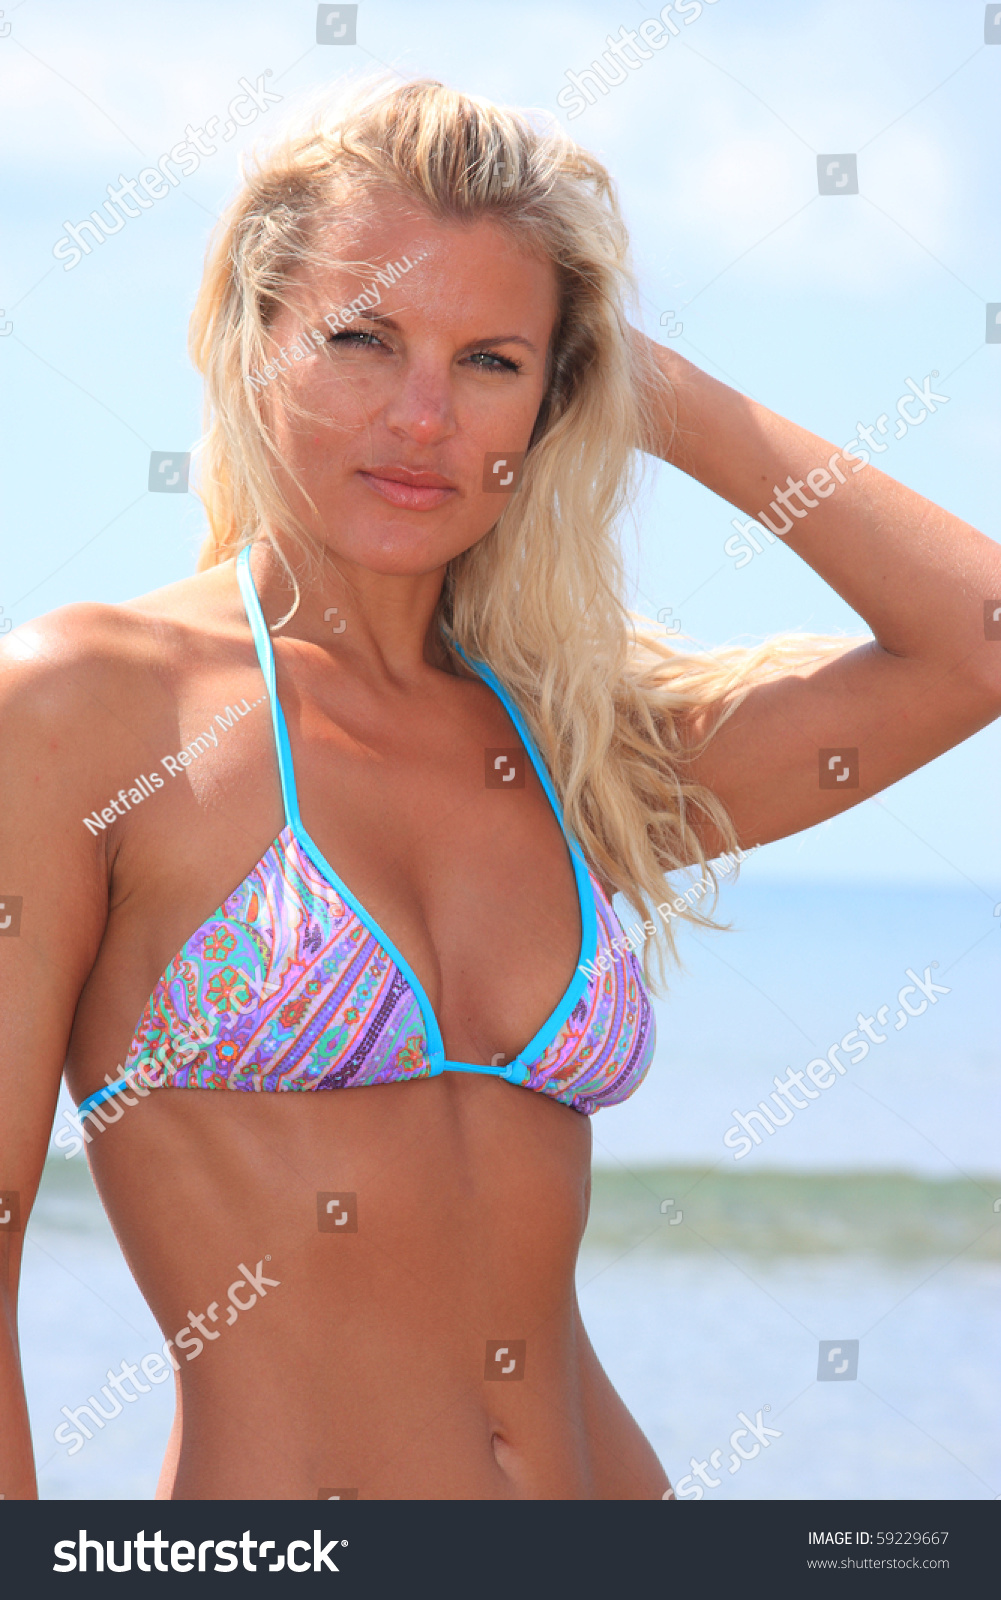 single russian girl in bikini